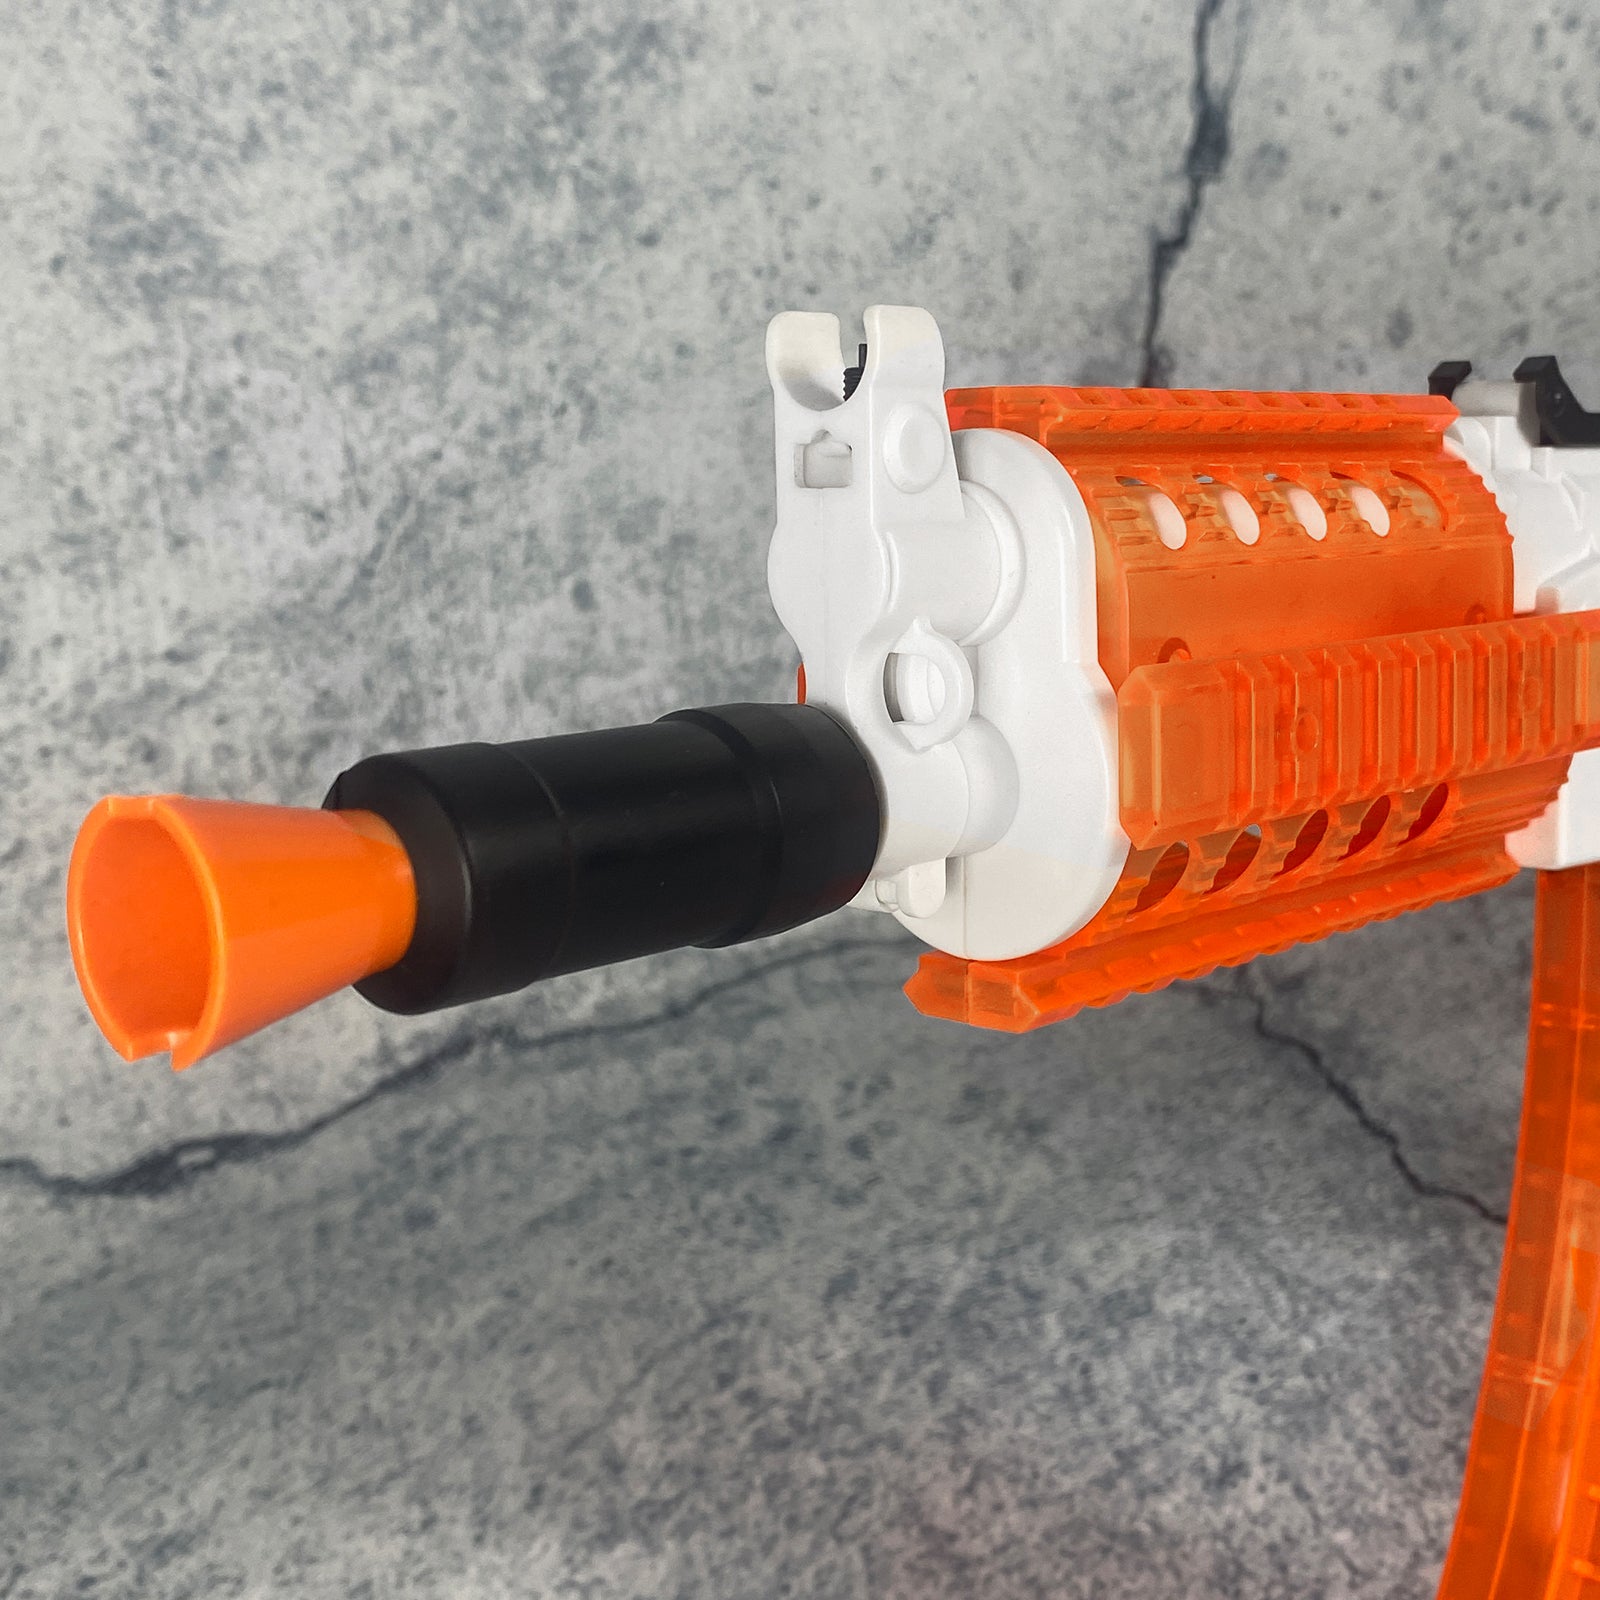 Gelblasterbest™ AK74U Gel Blaster-Orange  gelblasterbest   